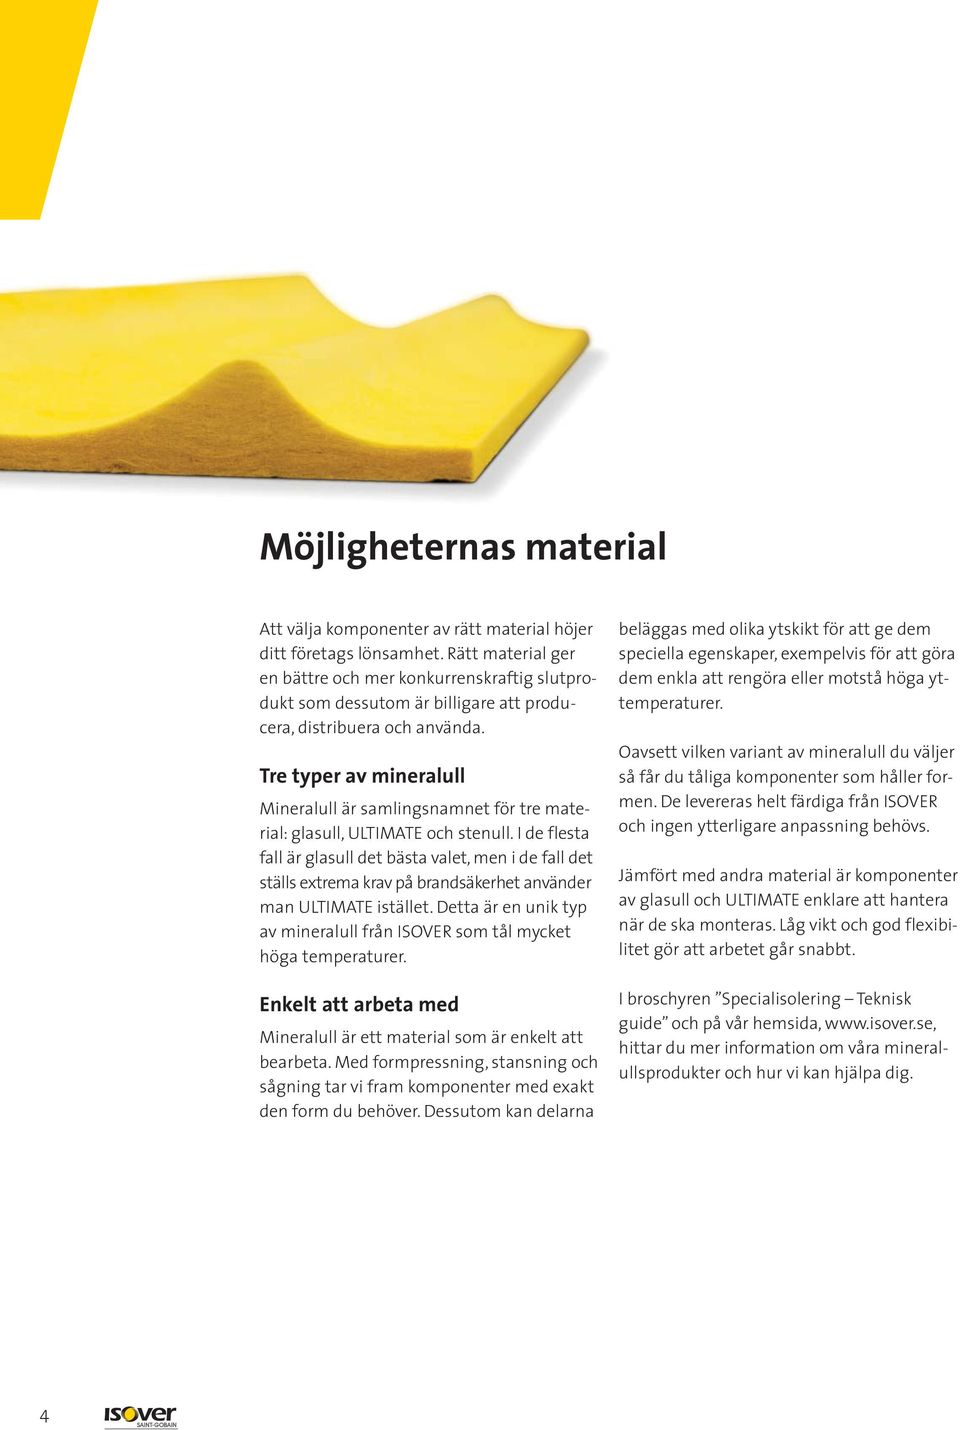 Tre typer av mineralull Mineralull är samlingsnamnet för tre material: glasull, ULTIMATE och stenull.